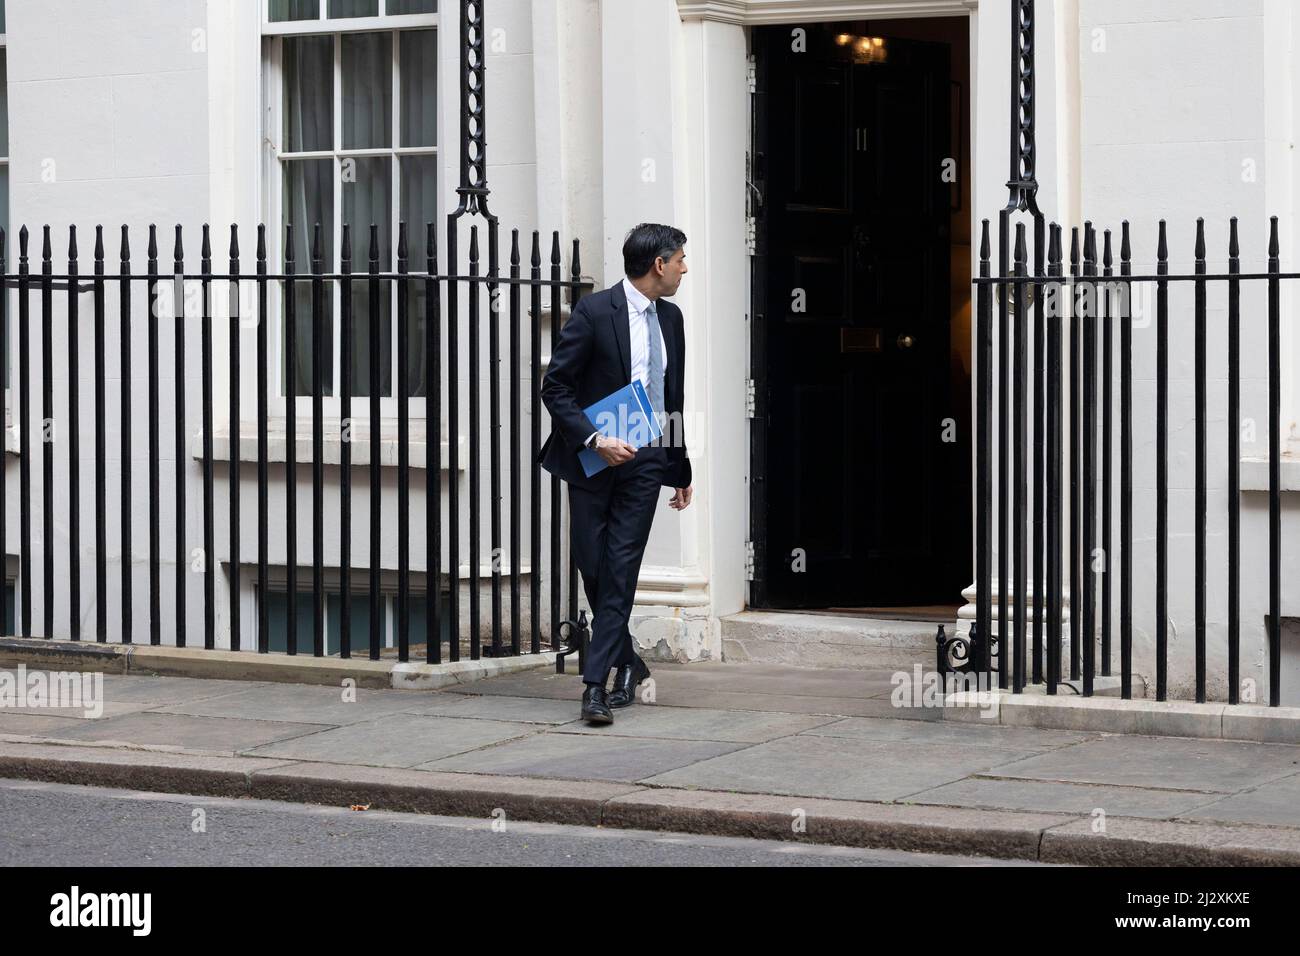 Il Segretario delle Finanze del Regno Unito lascia il n. 11 in anticipo rispetto al bilancio di primavera. Immagini scattate il 23rd marzo 2022. © Belinda Jiao Foto Stock